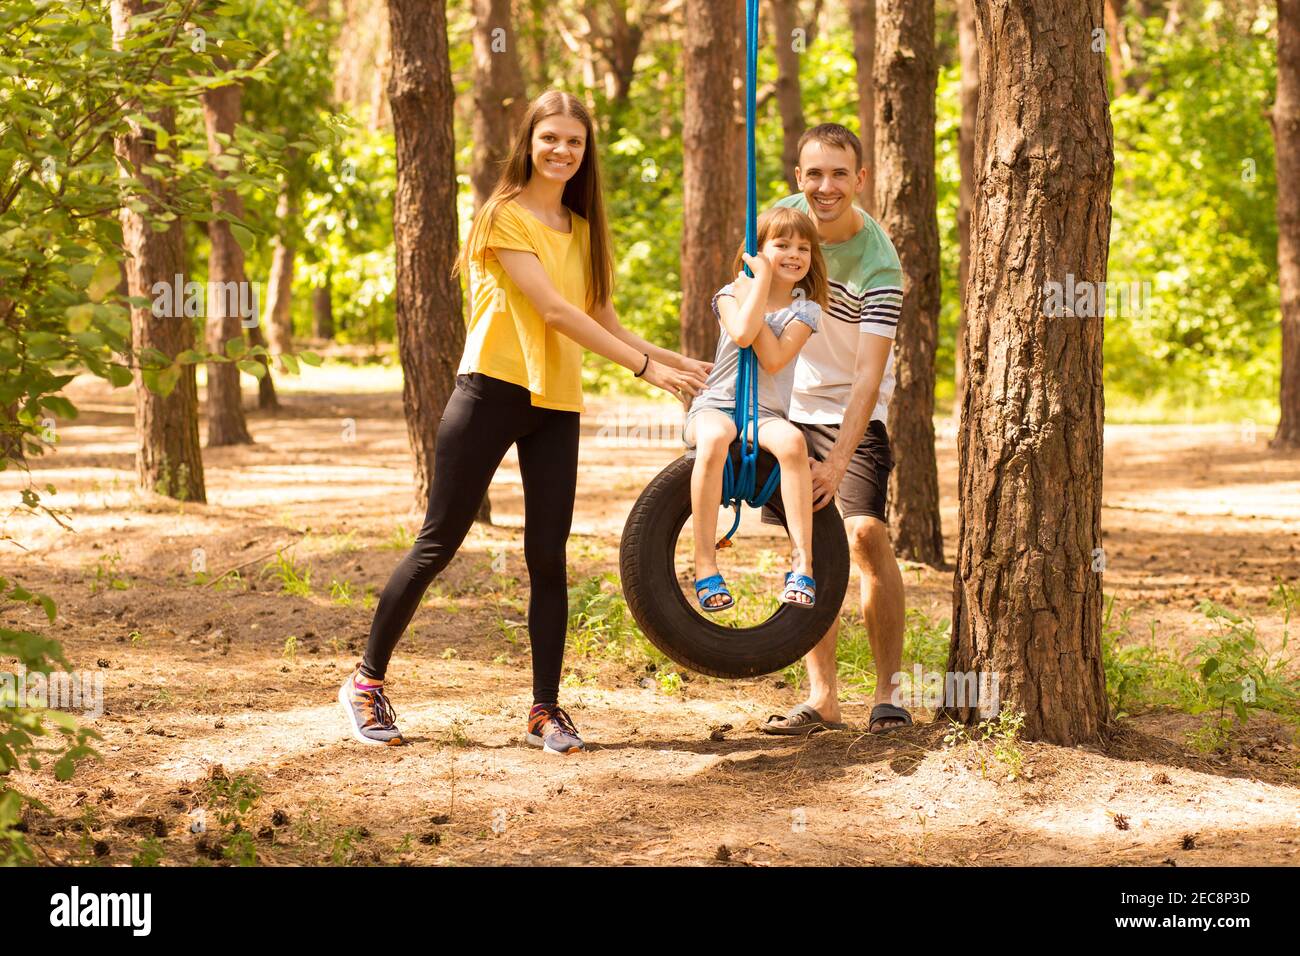 ritratto di giovane genitore felice che ruota figlia su ruota, con la natura estiva sullo sfondo Foto Stock